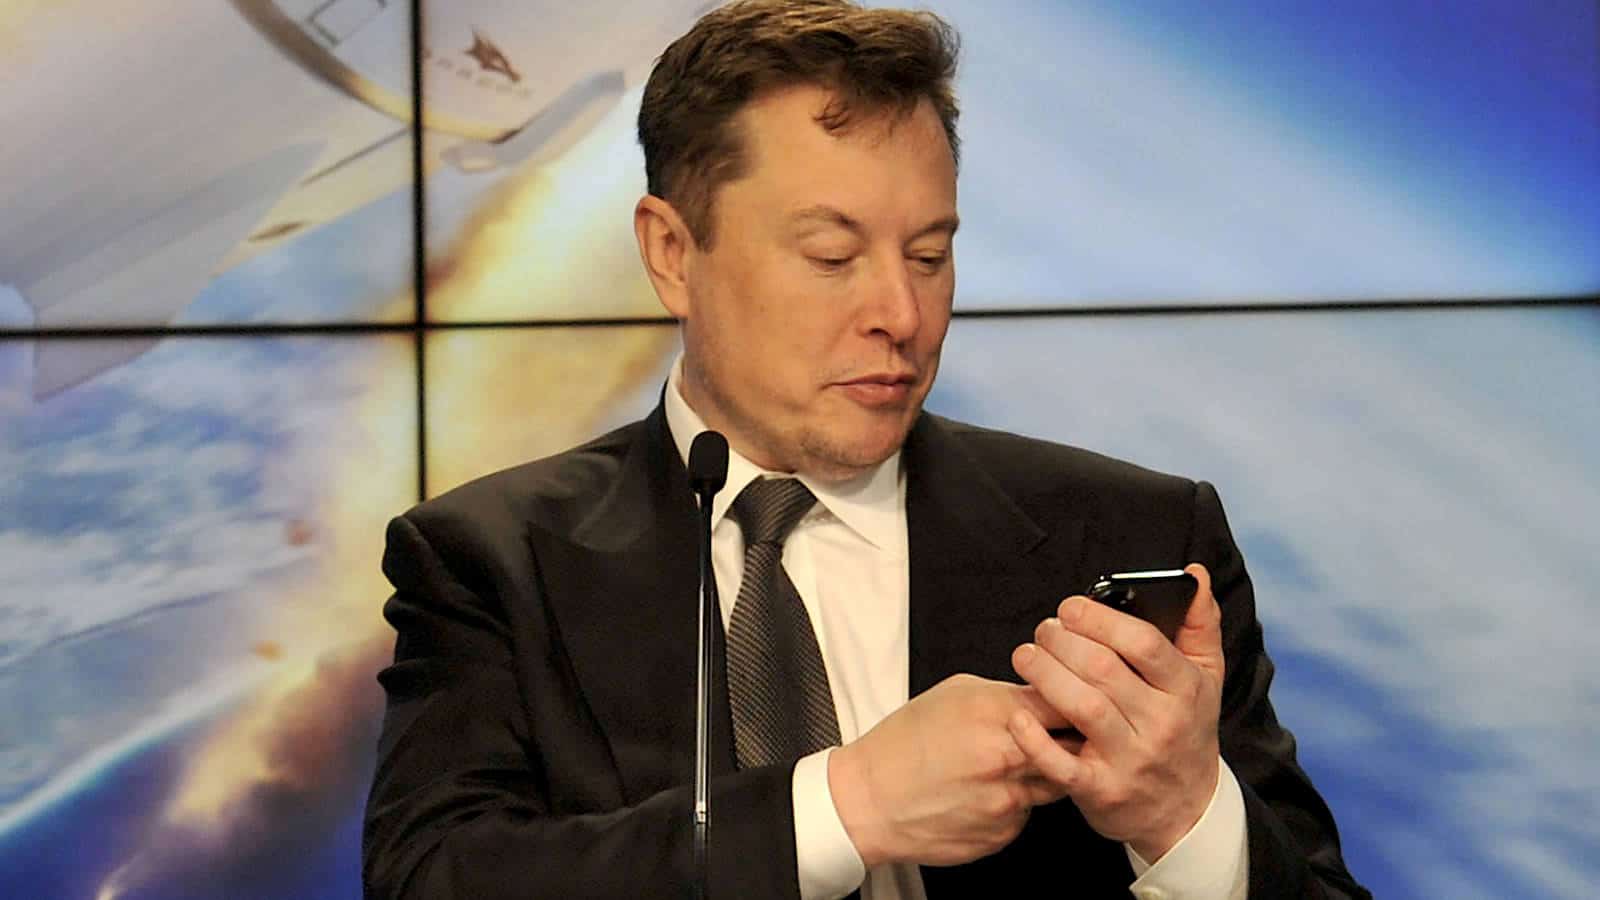 Sprememba politike: Elon Musk sporočil, da Tesla zaradi podnebnih sprememb ne sprejema več bitcoinov